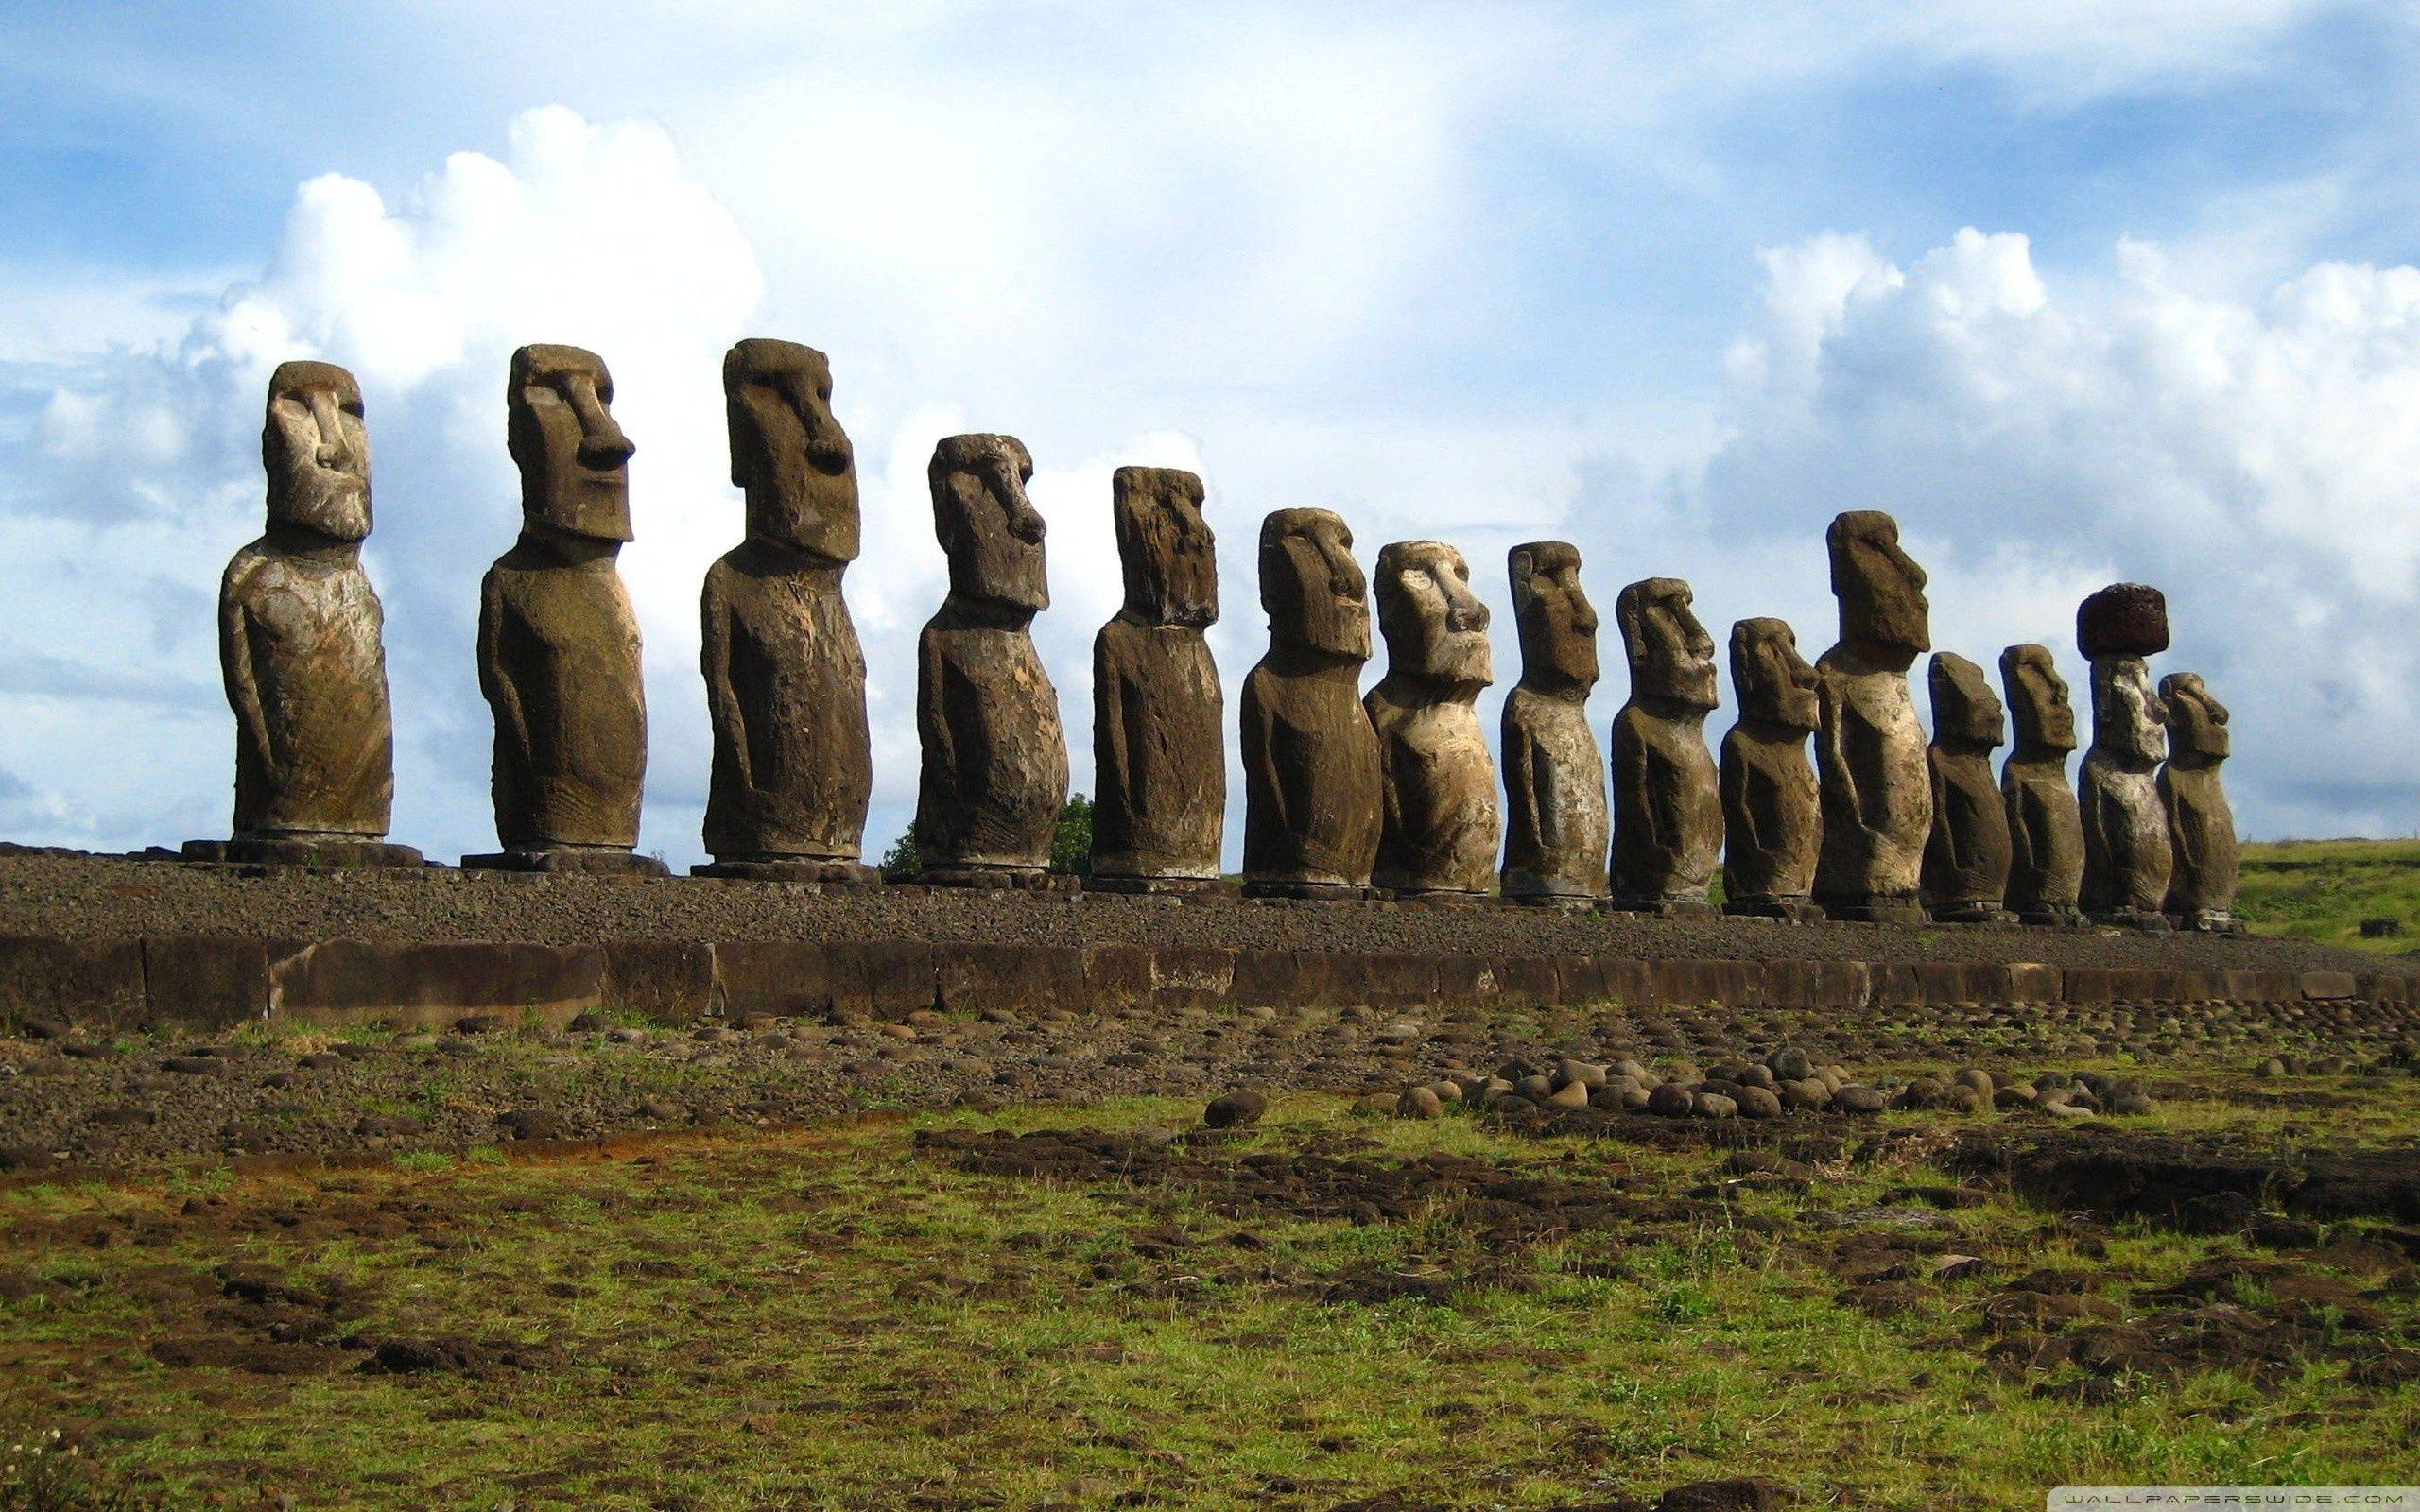 Easter Island Statues ❤ K 2K Desk 4K Wallpapers for K Ultra 2K TV